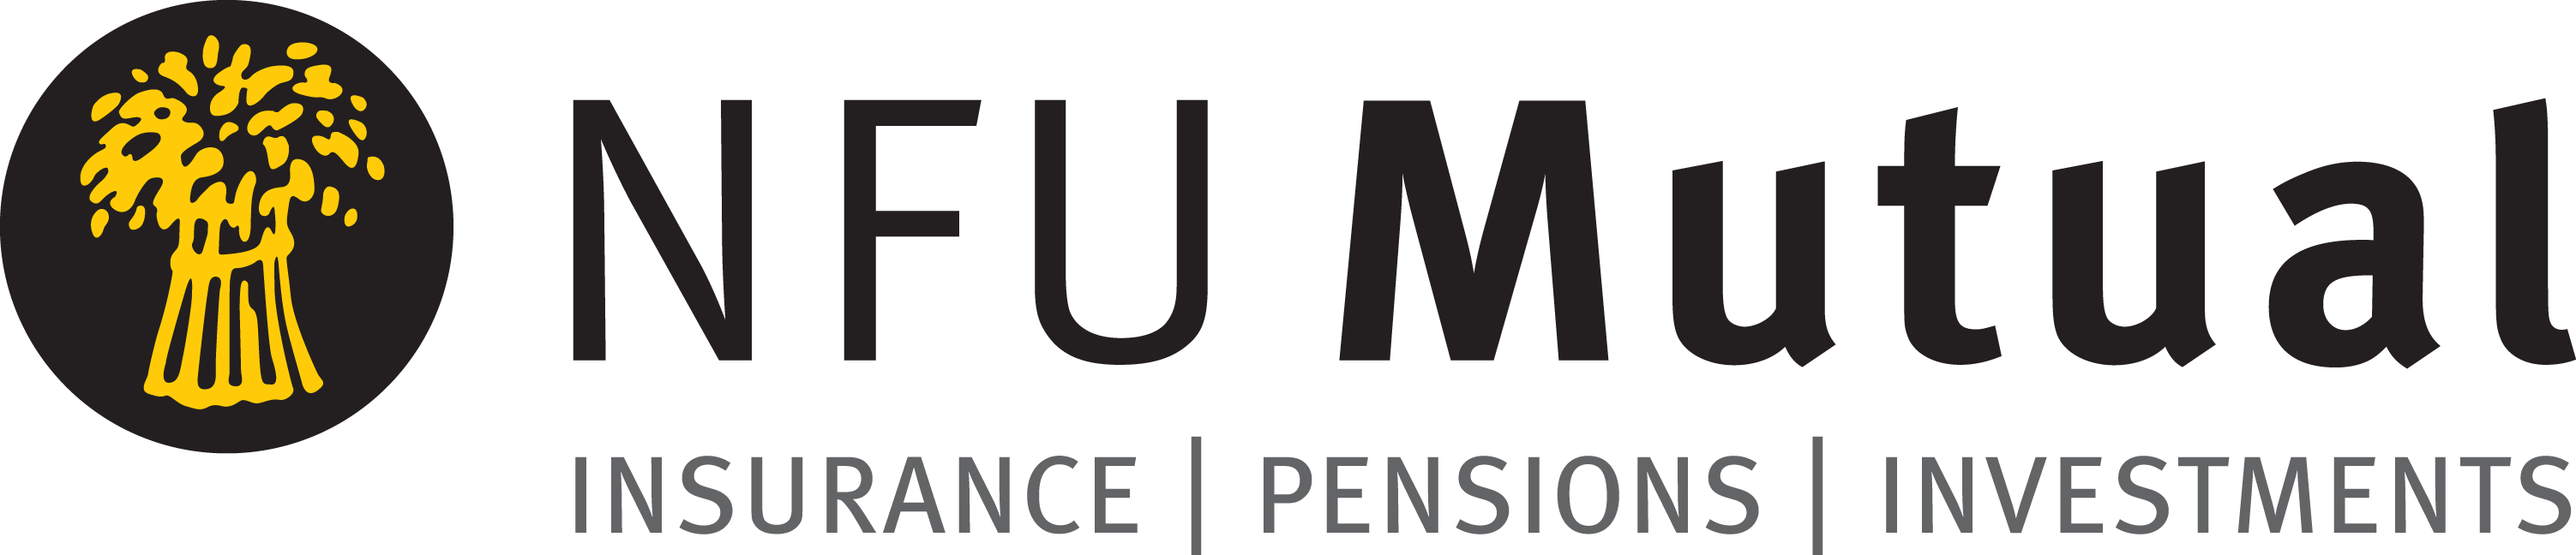 NFU mutual logo